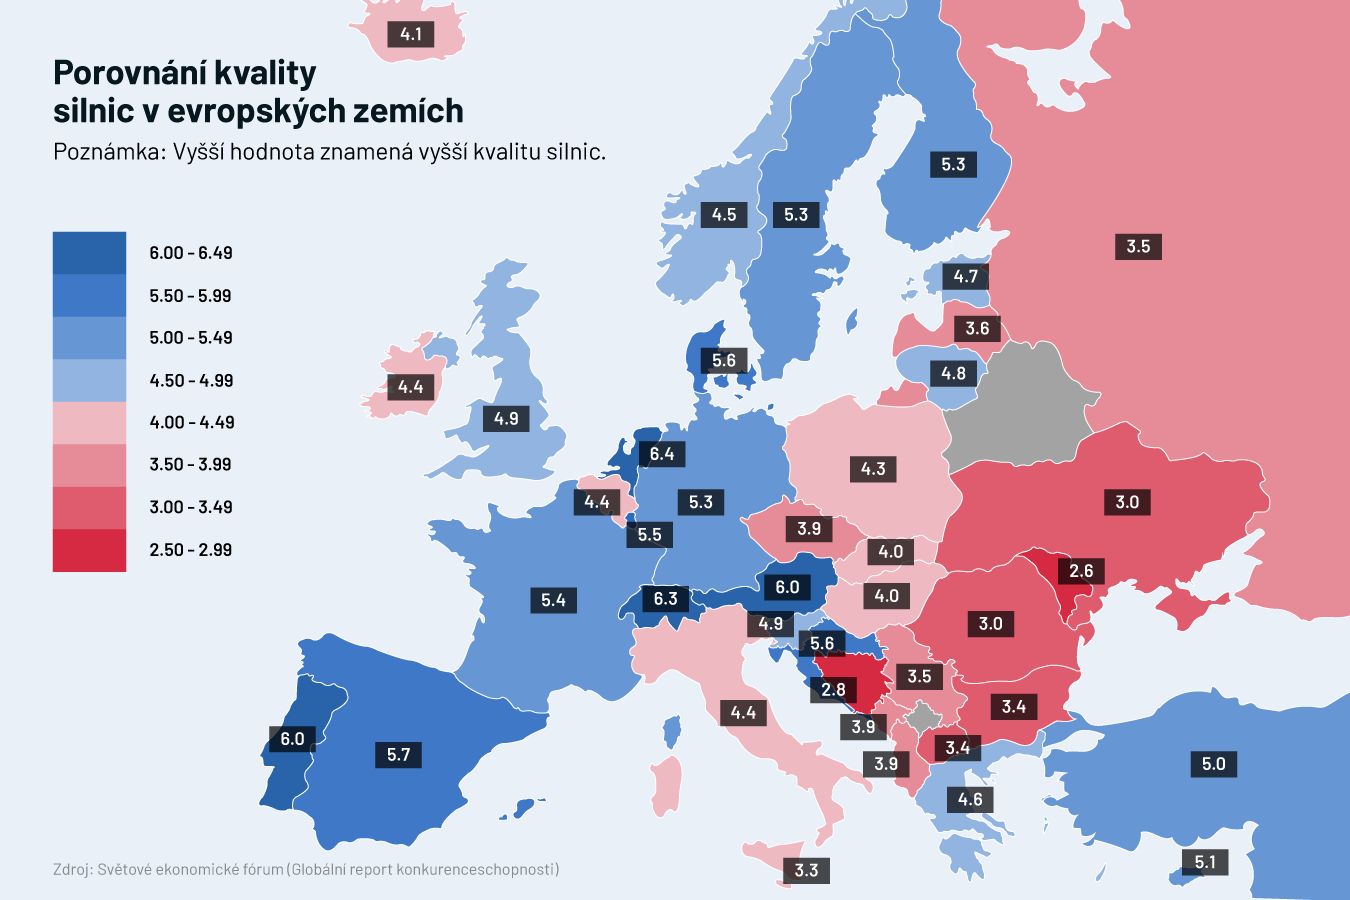 Porovnání kvality silnic v evropských zemích